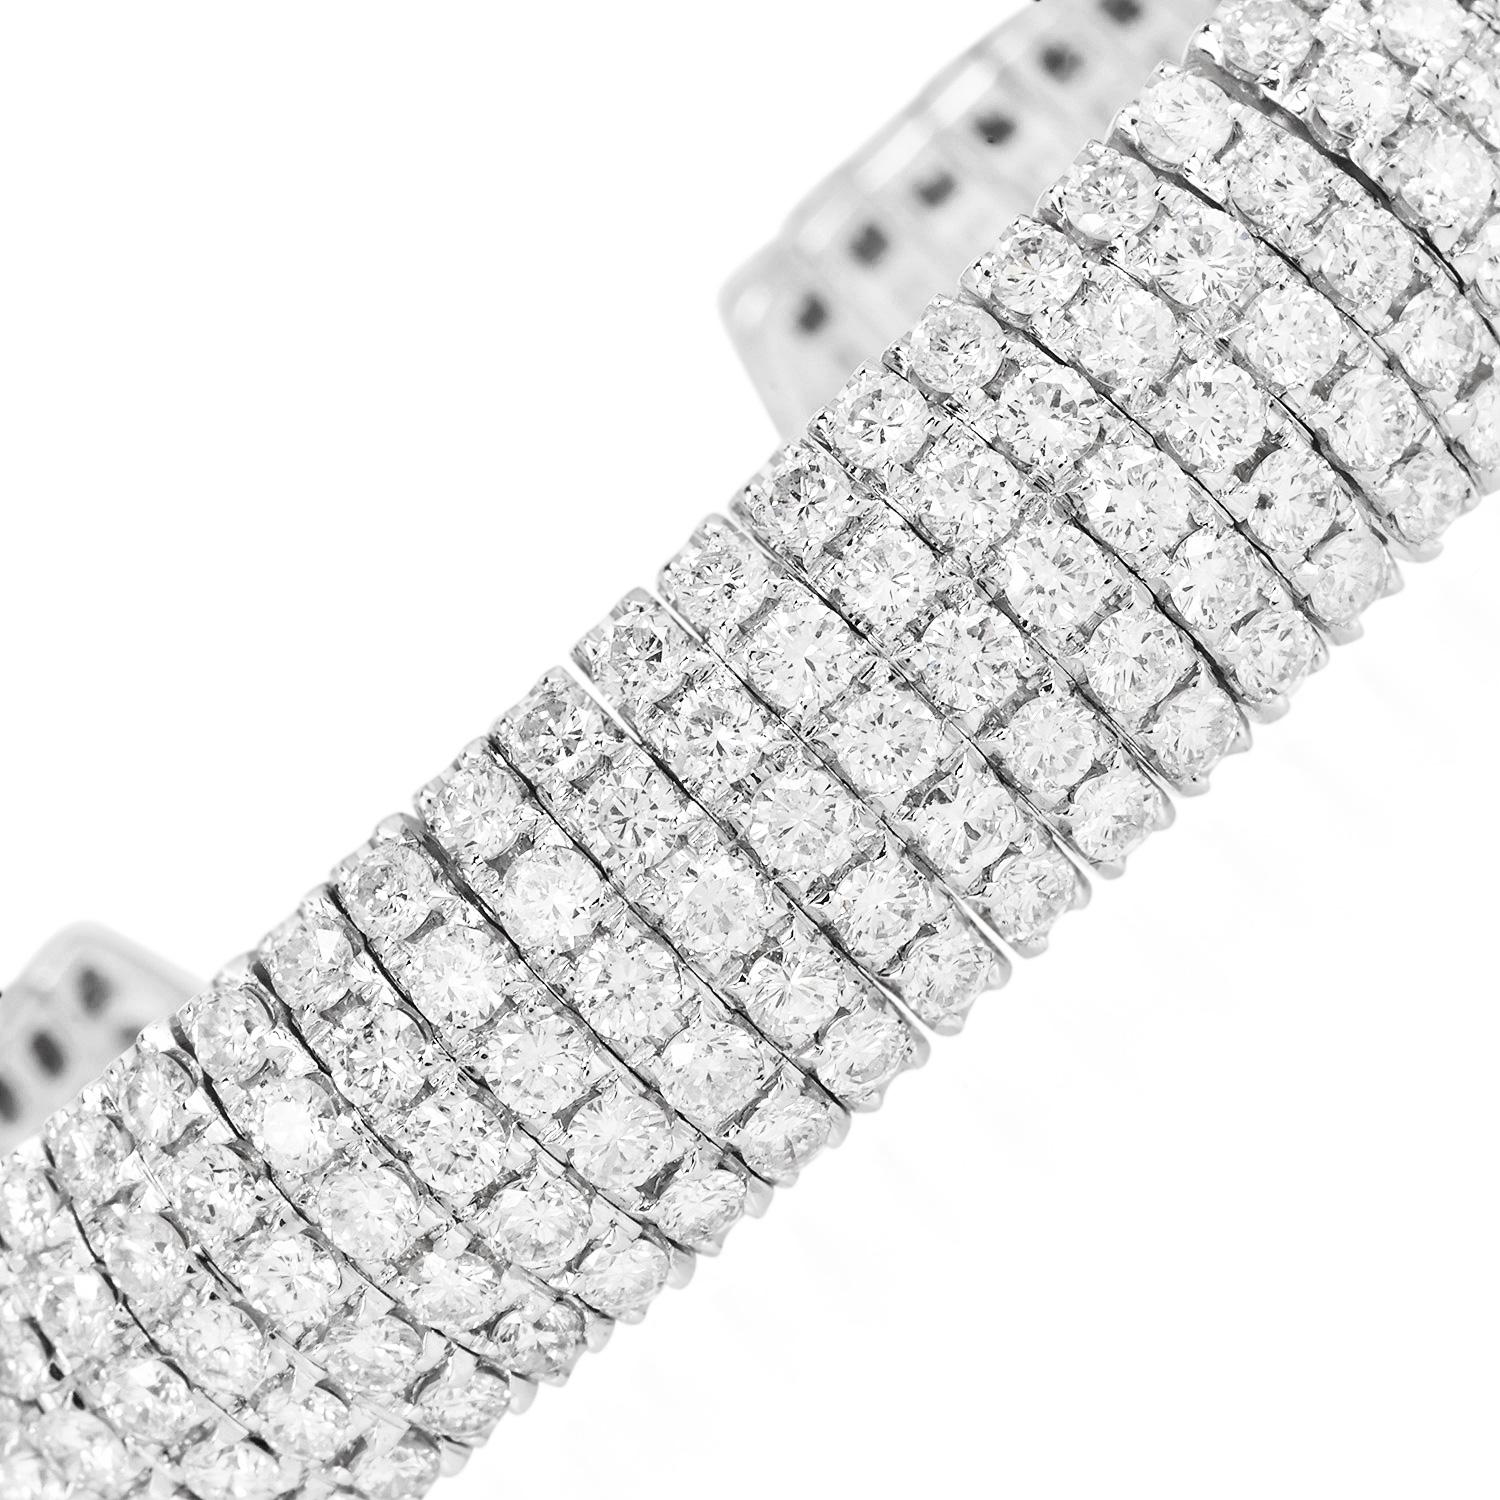 Ce bracelet manchette exquis en or blanc 18 carats est une luxueuse symphonie de 15,72 carats de diamants sertis avec précision sur cinq rangées.

Cette manchette ouverte est un modèle de glamour classique avec une touche contemporaine, créant une